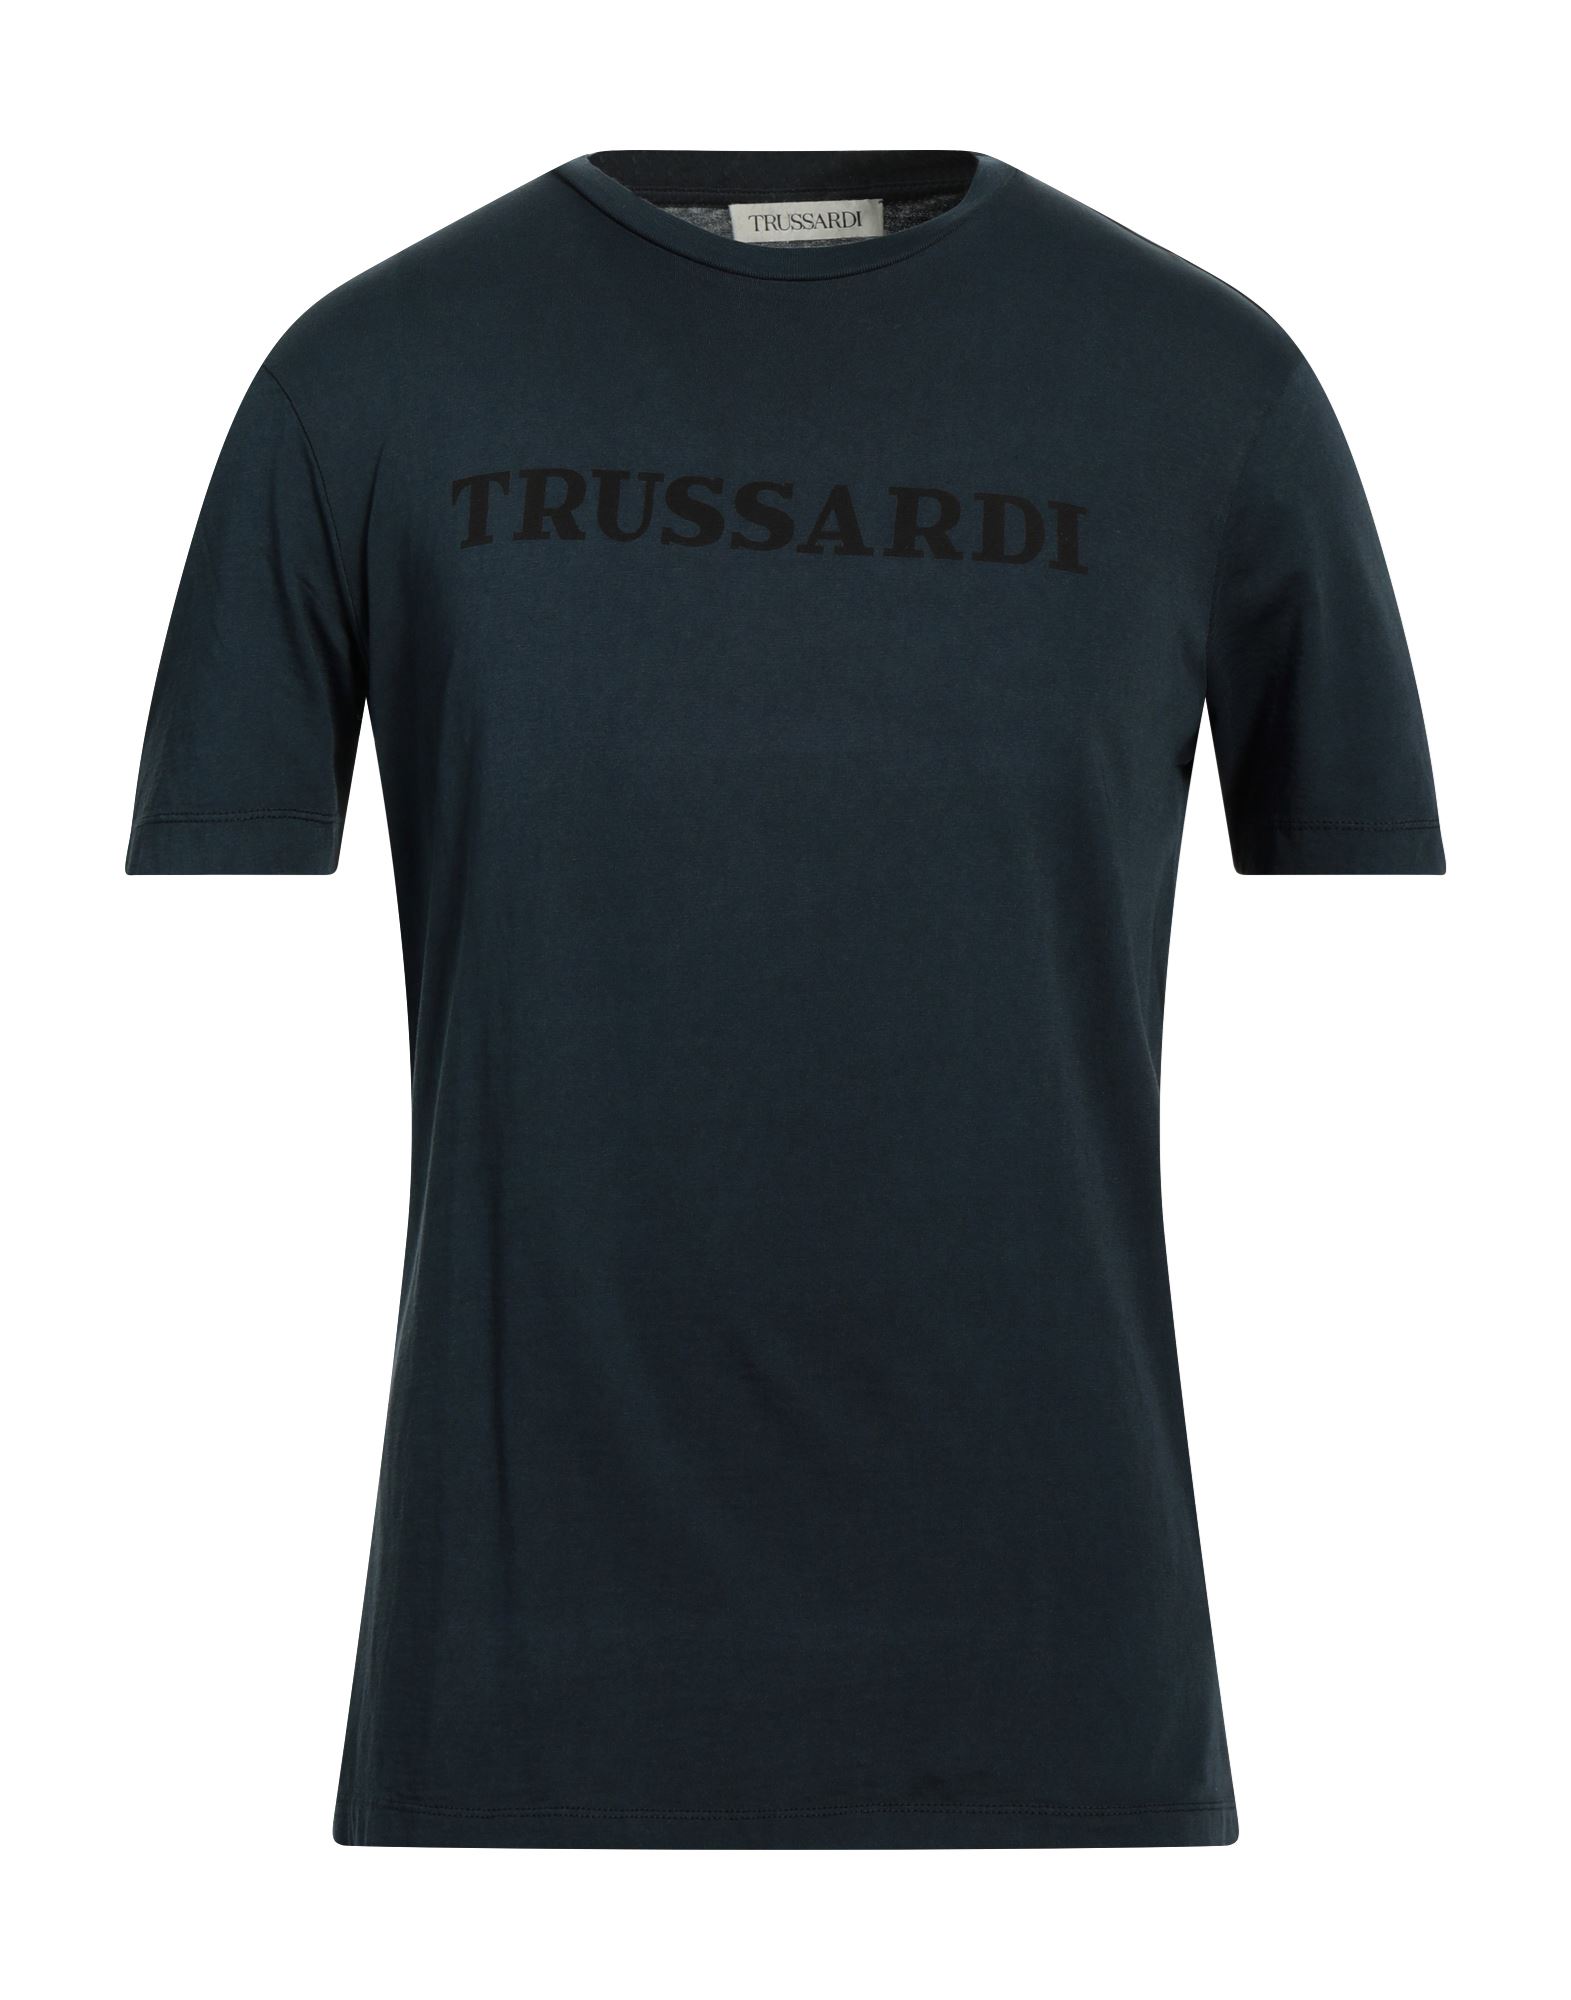 TRUSSARDI T-shirts Herren Nachtblau von TRUSSARDI